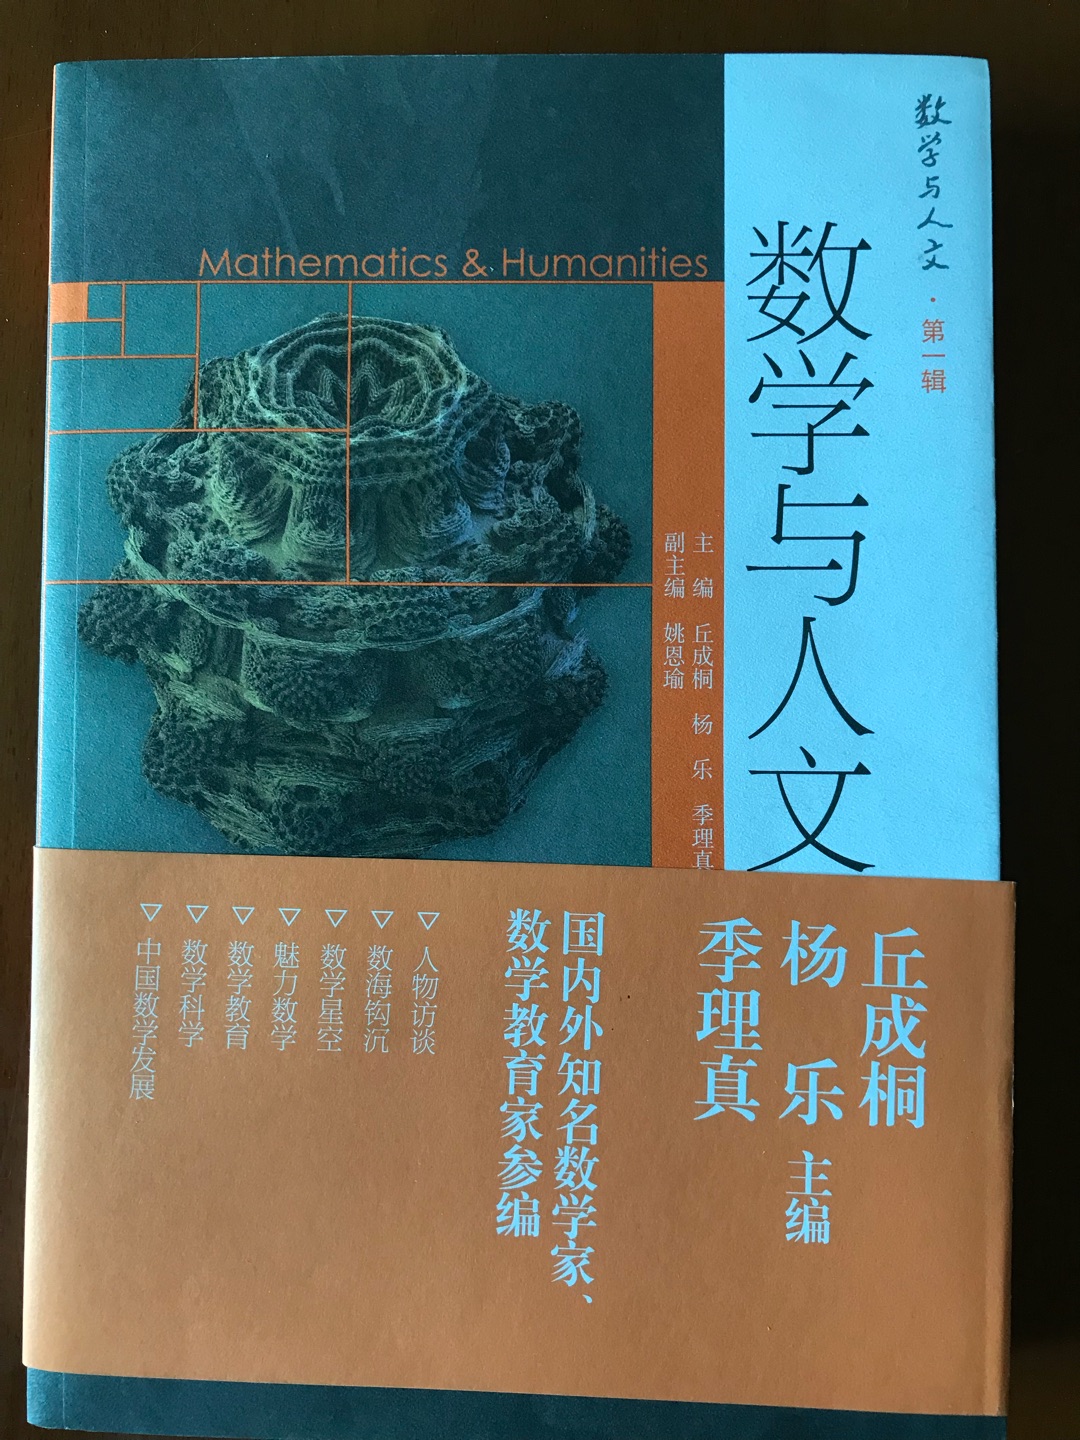 丘成桐是华人数学家的骄傲，值得研究其书